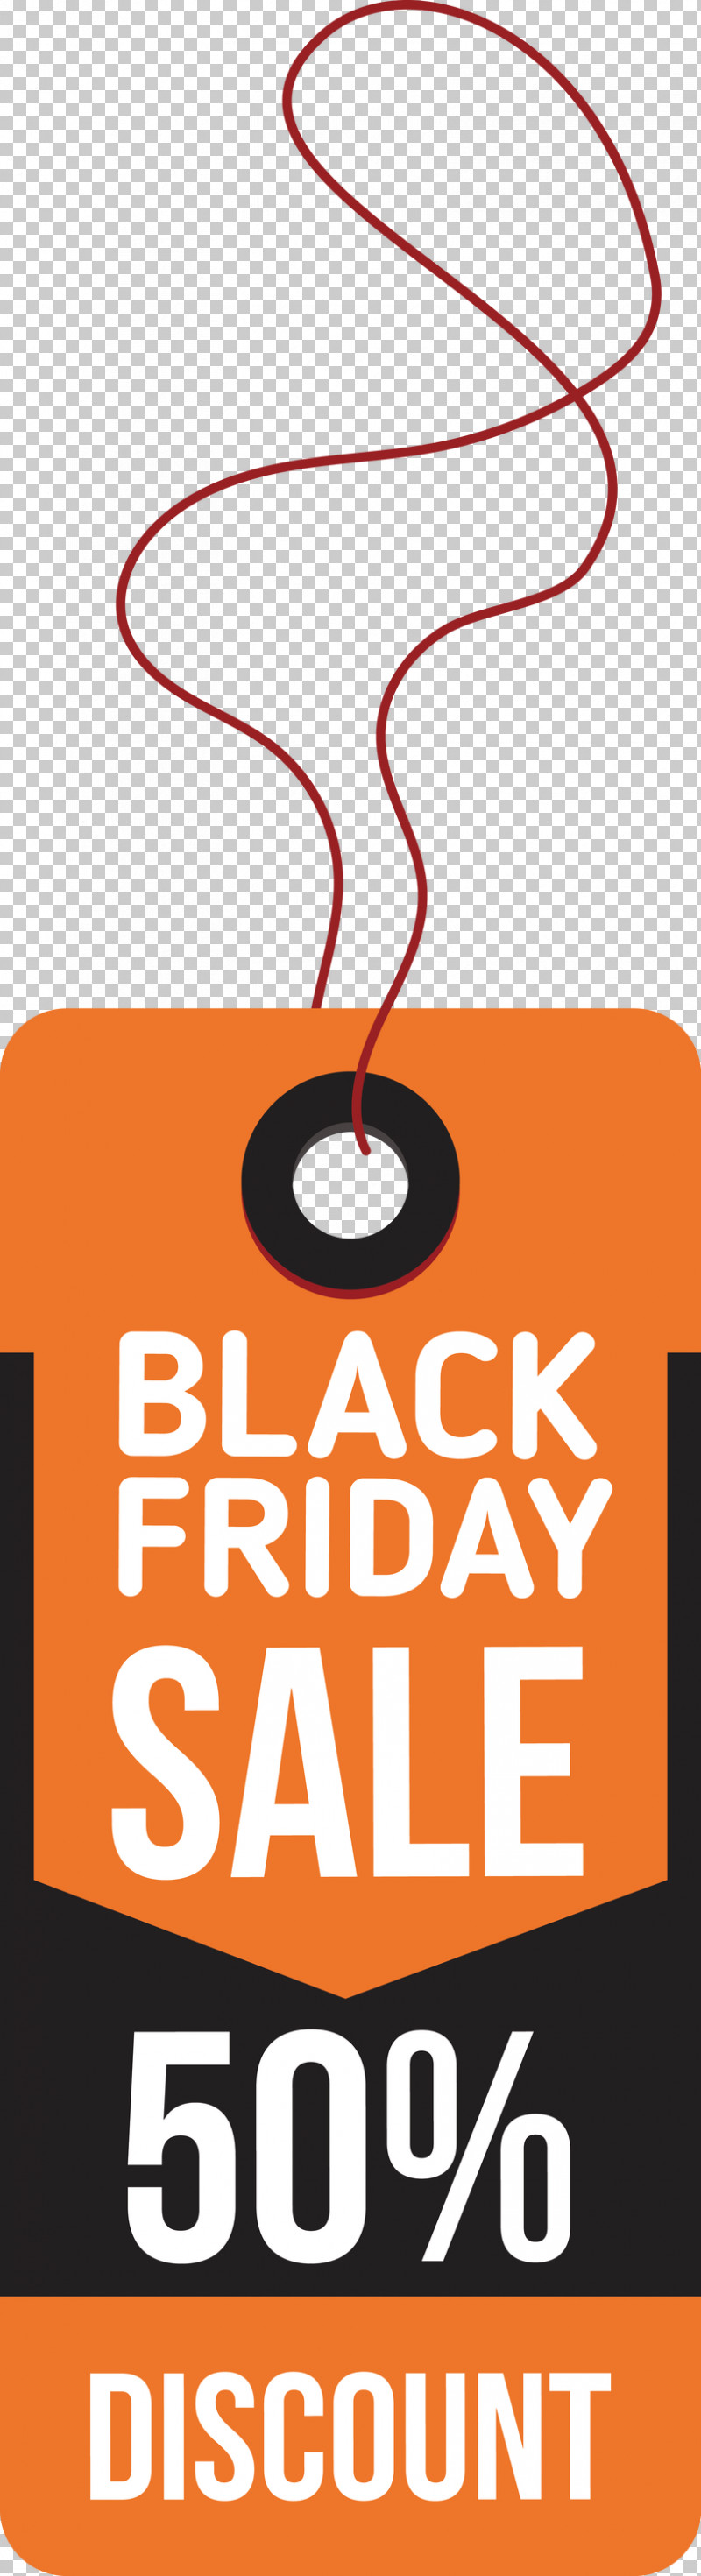 Black Friday Black Friday Discount Black Friday Sale PNG, Clipart, Area, Black Friday, Black Friday Discount, Black Friday Sale, Line Free PNG Download